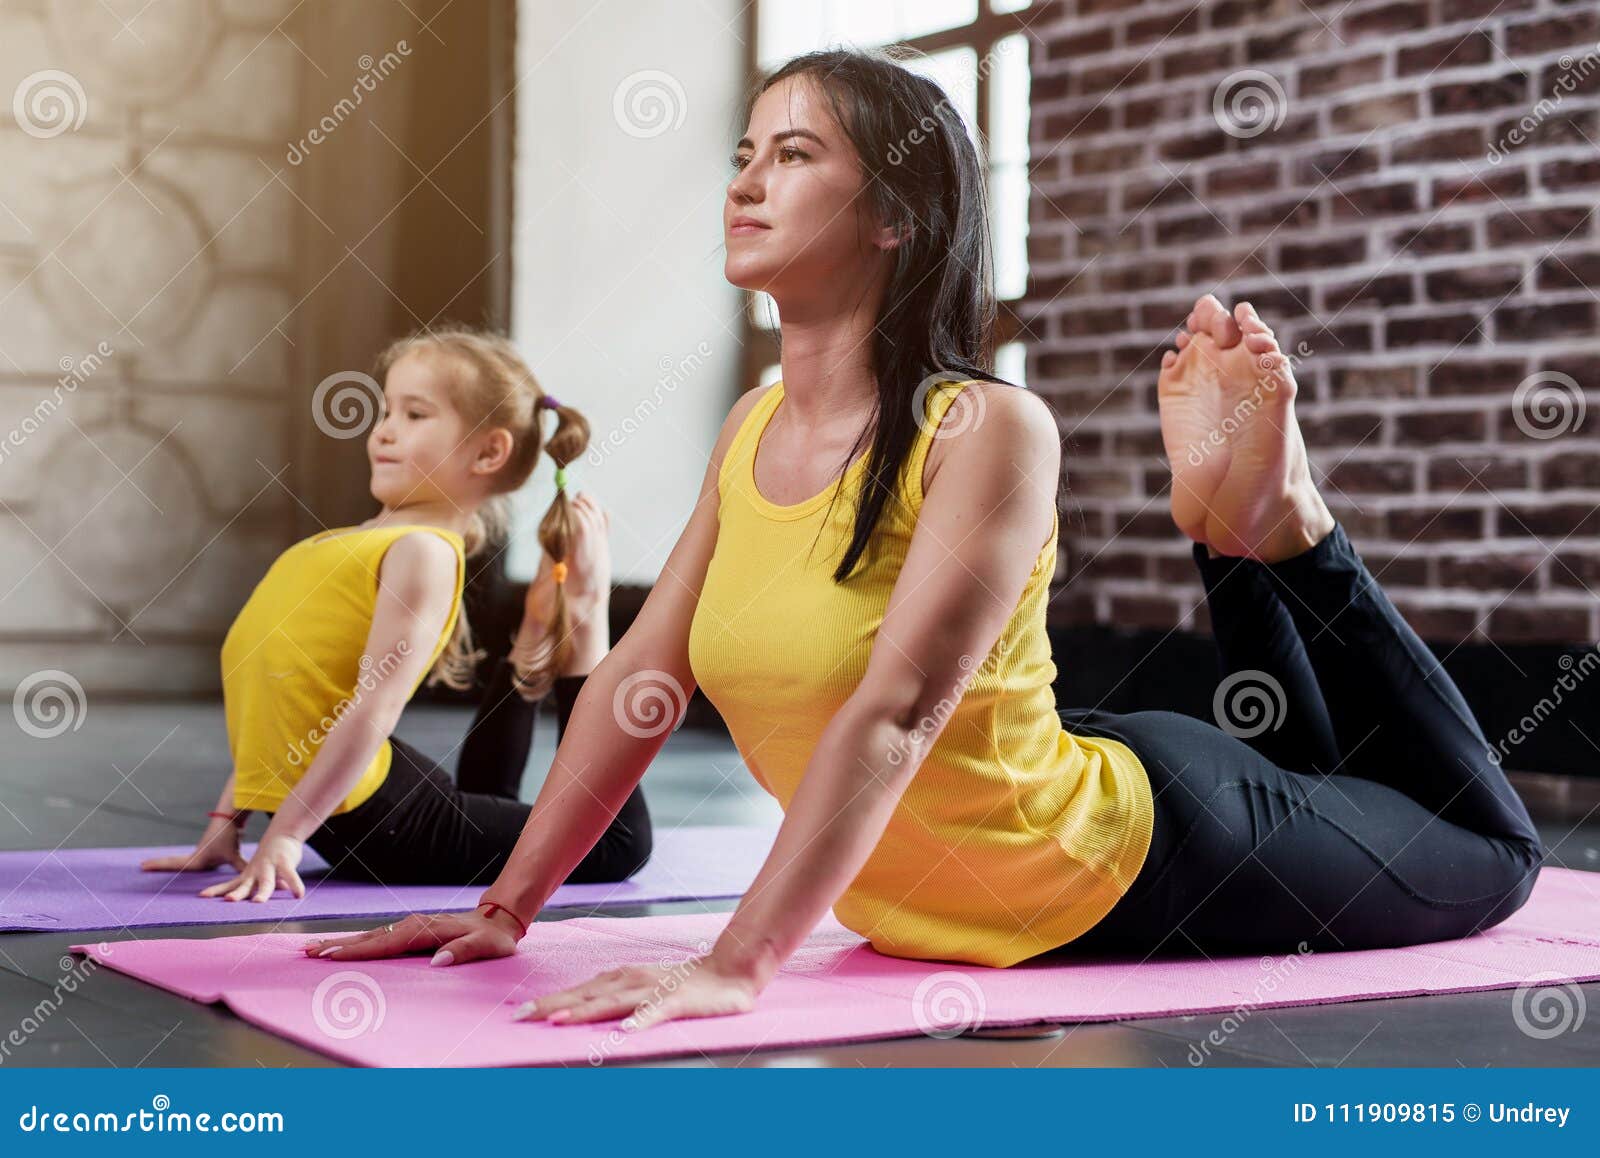 How to Do King Cobra Pose - Yoga Tutorial — Alo Moves